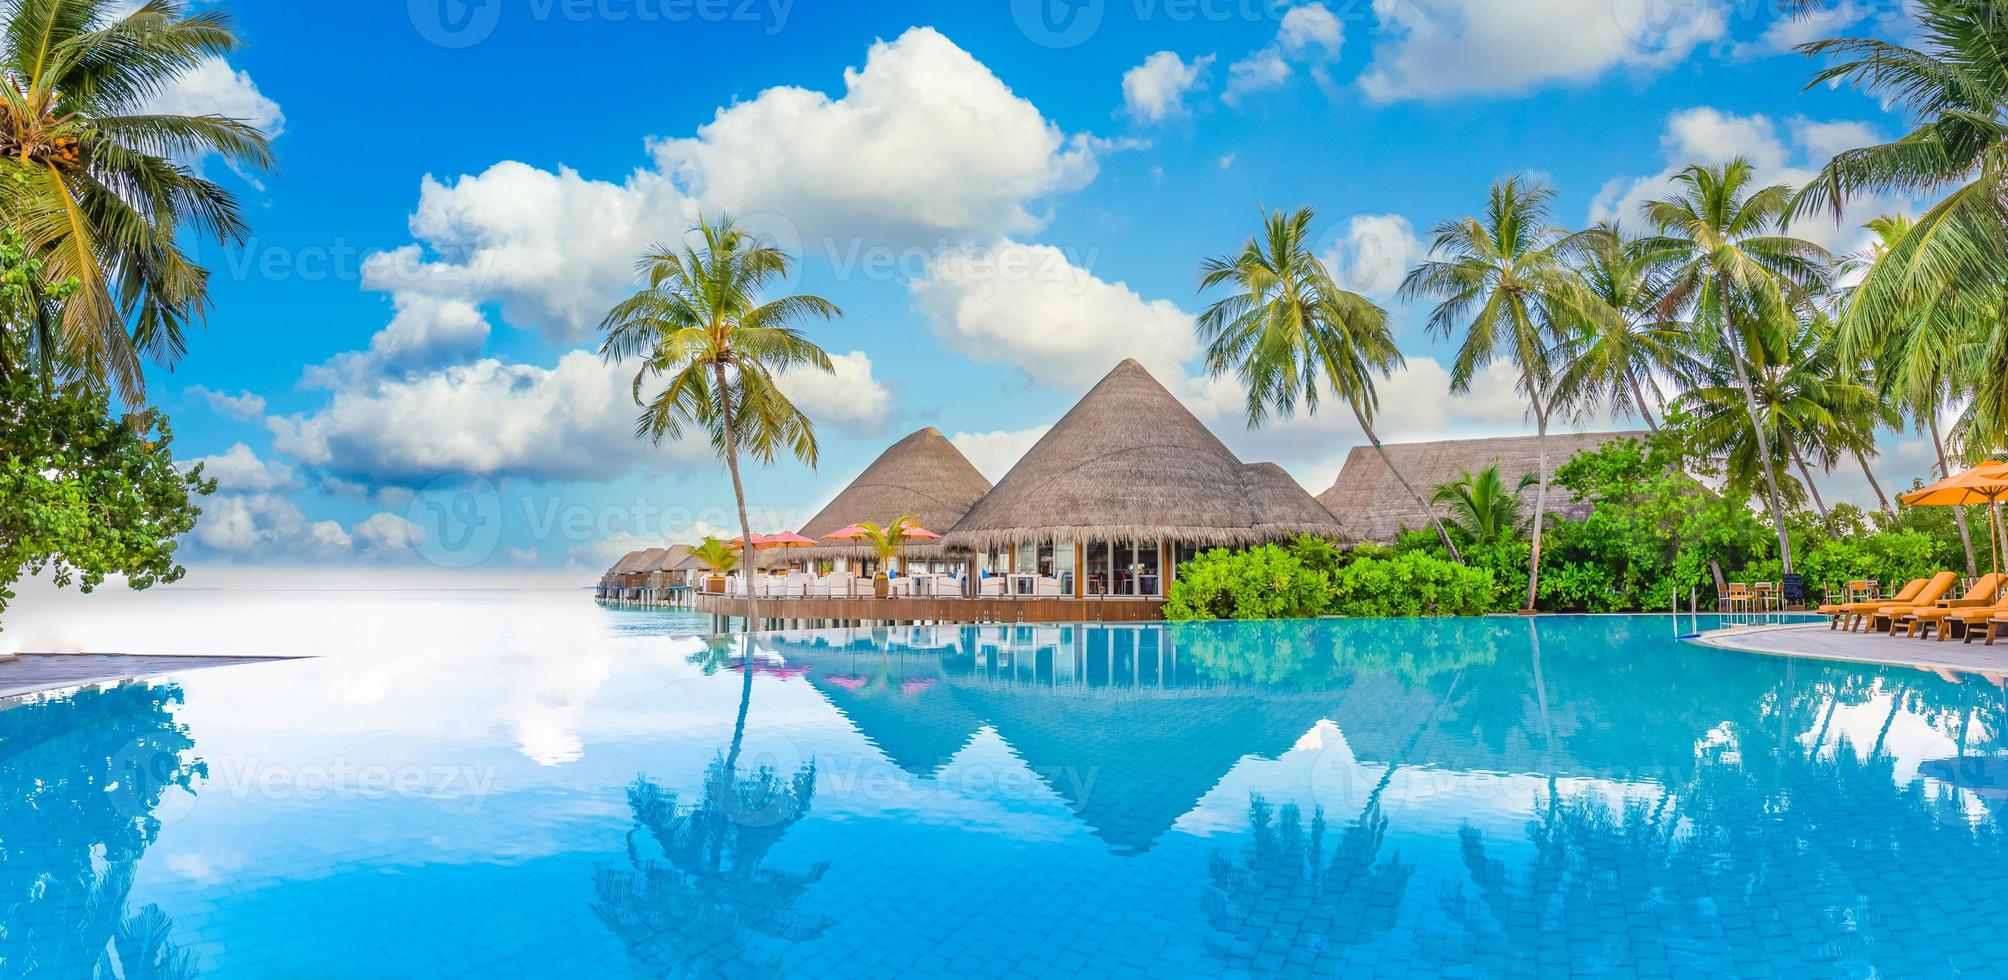 resort di lusso per vacanze estive con riflesso sulla piscina a sfioro, vista sul mare di palme. incredibile paesaggio di viaggio, foto